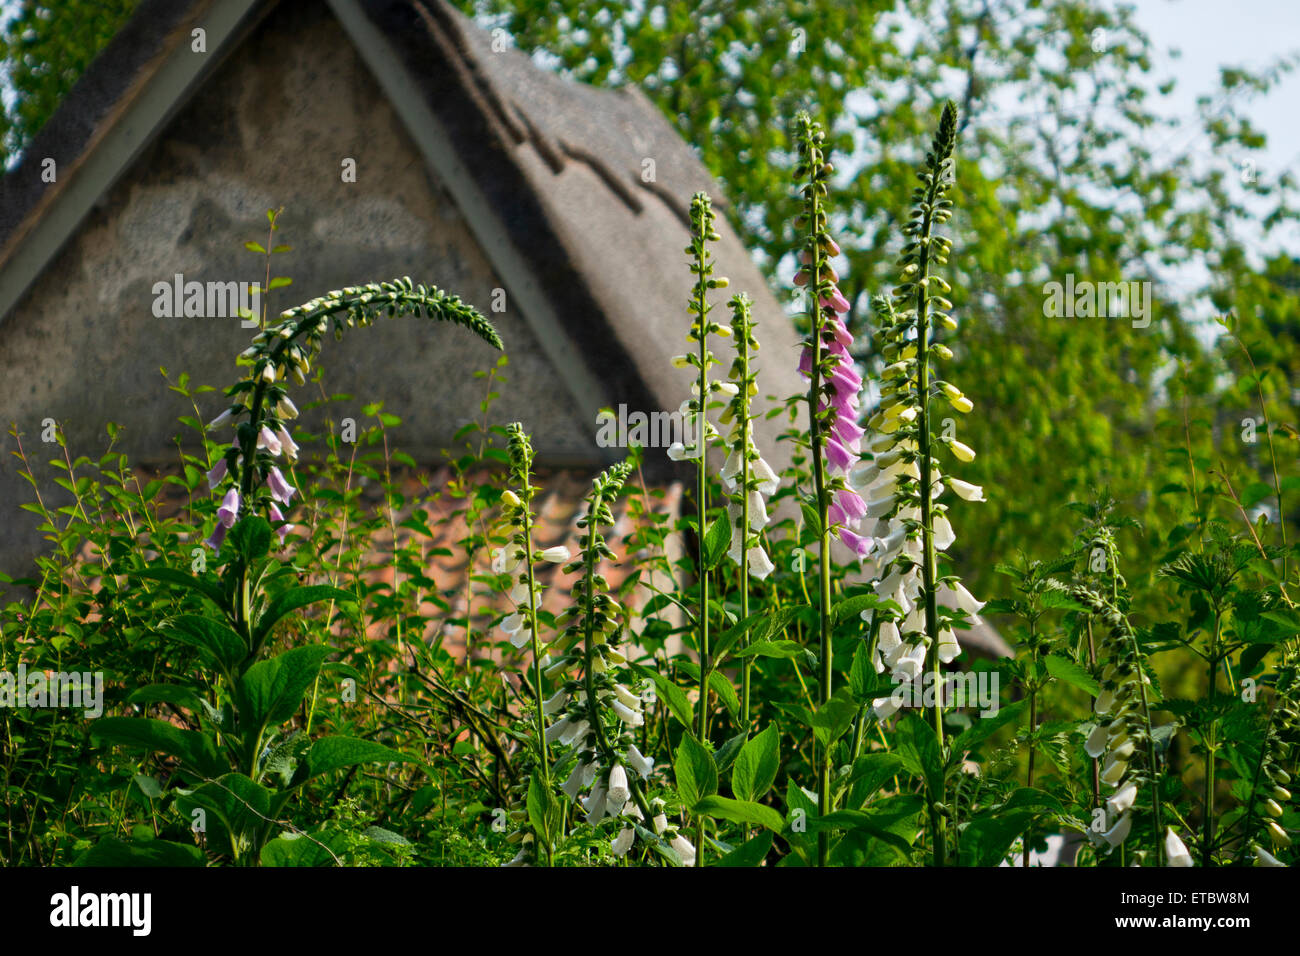 Foxgloves in cottage garden Stock Photo